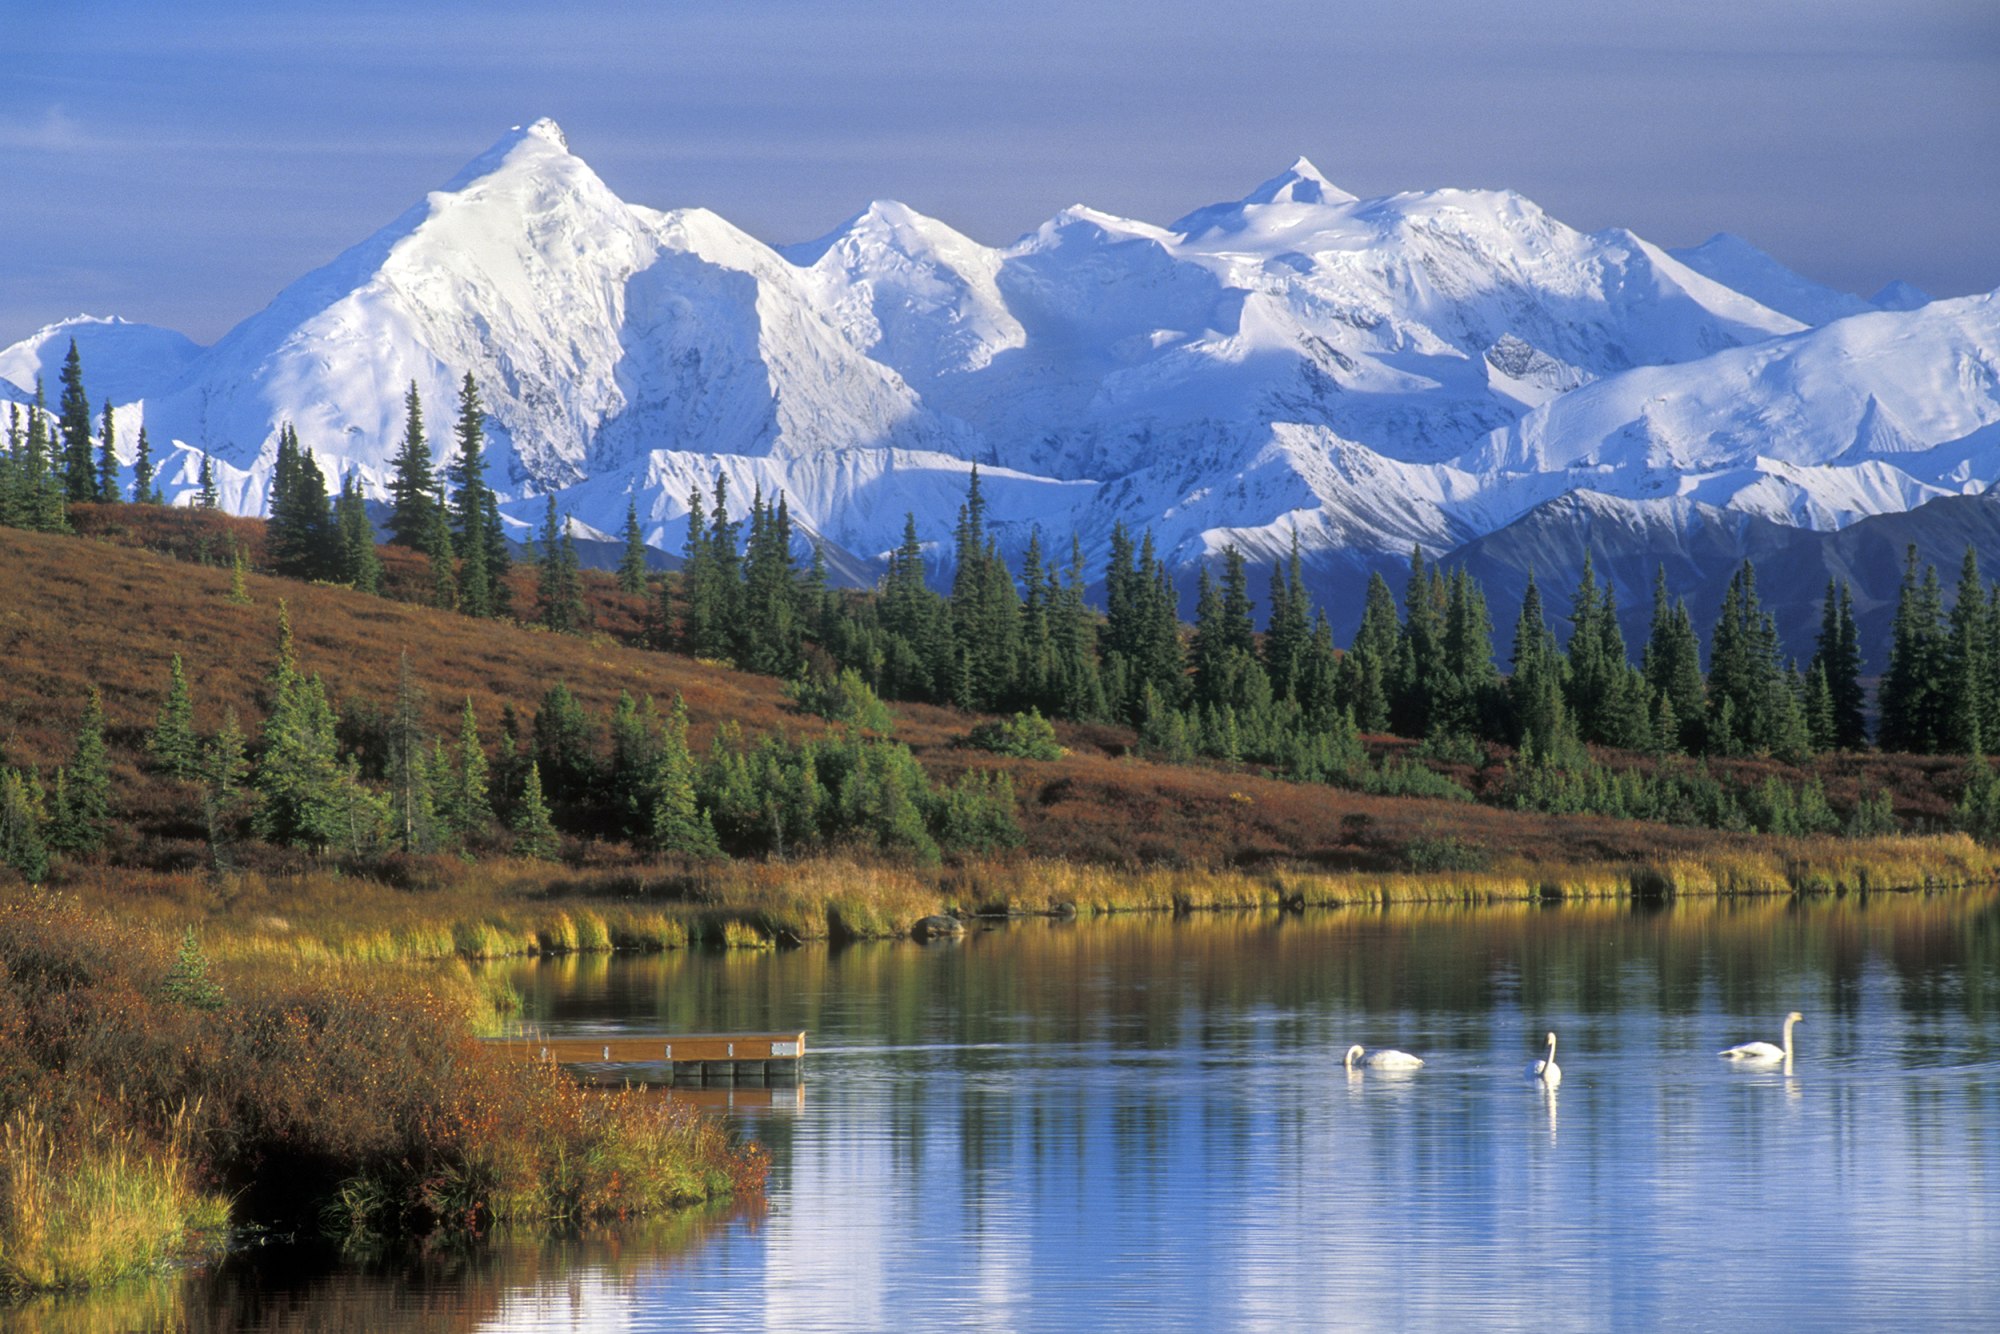 Alaska and the Yukon